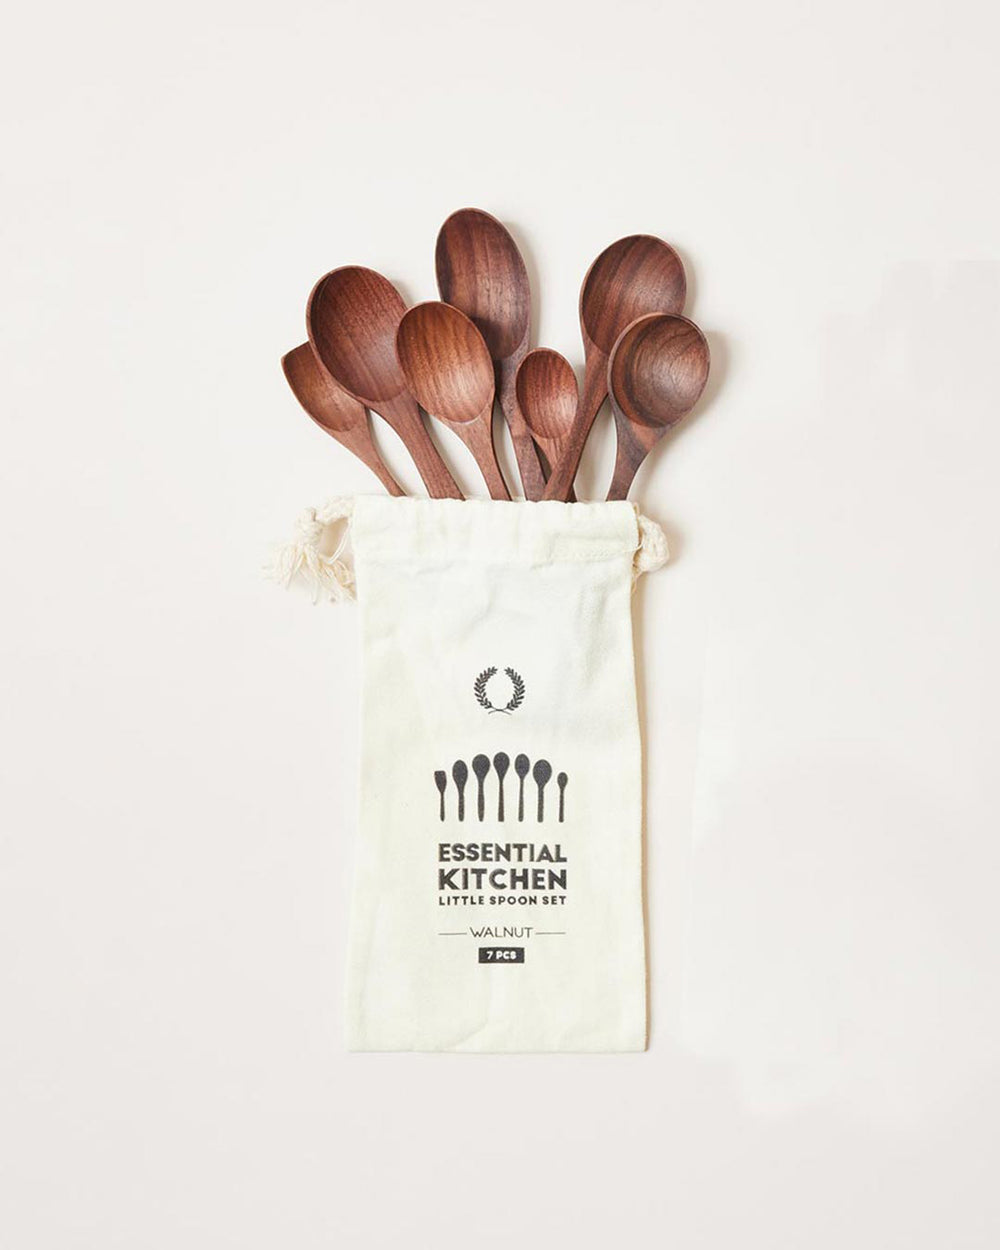 https://www.farmhousepottery.com/cdn/shop/products/Essential-kitchen-little-spoon-set-of-7-walnut.jpg?v=1696252717&width=1000